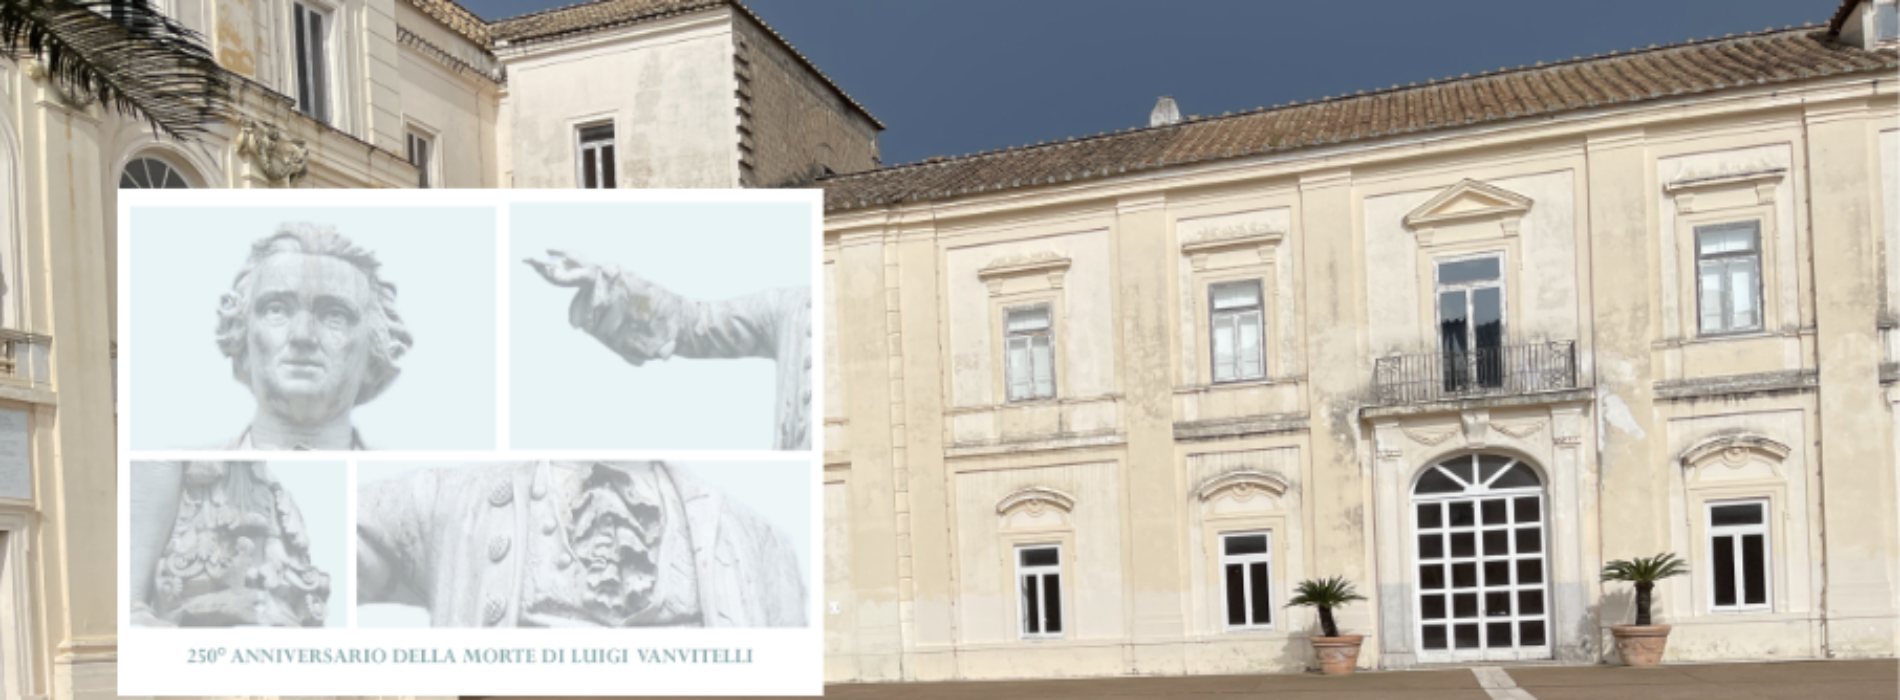 Luigi Vanvitelli, 250 anni dalla morte. Convegno al Belvedere